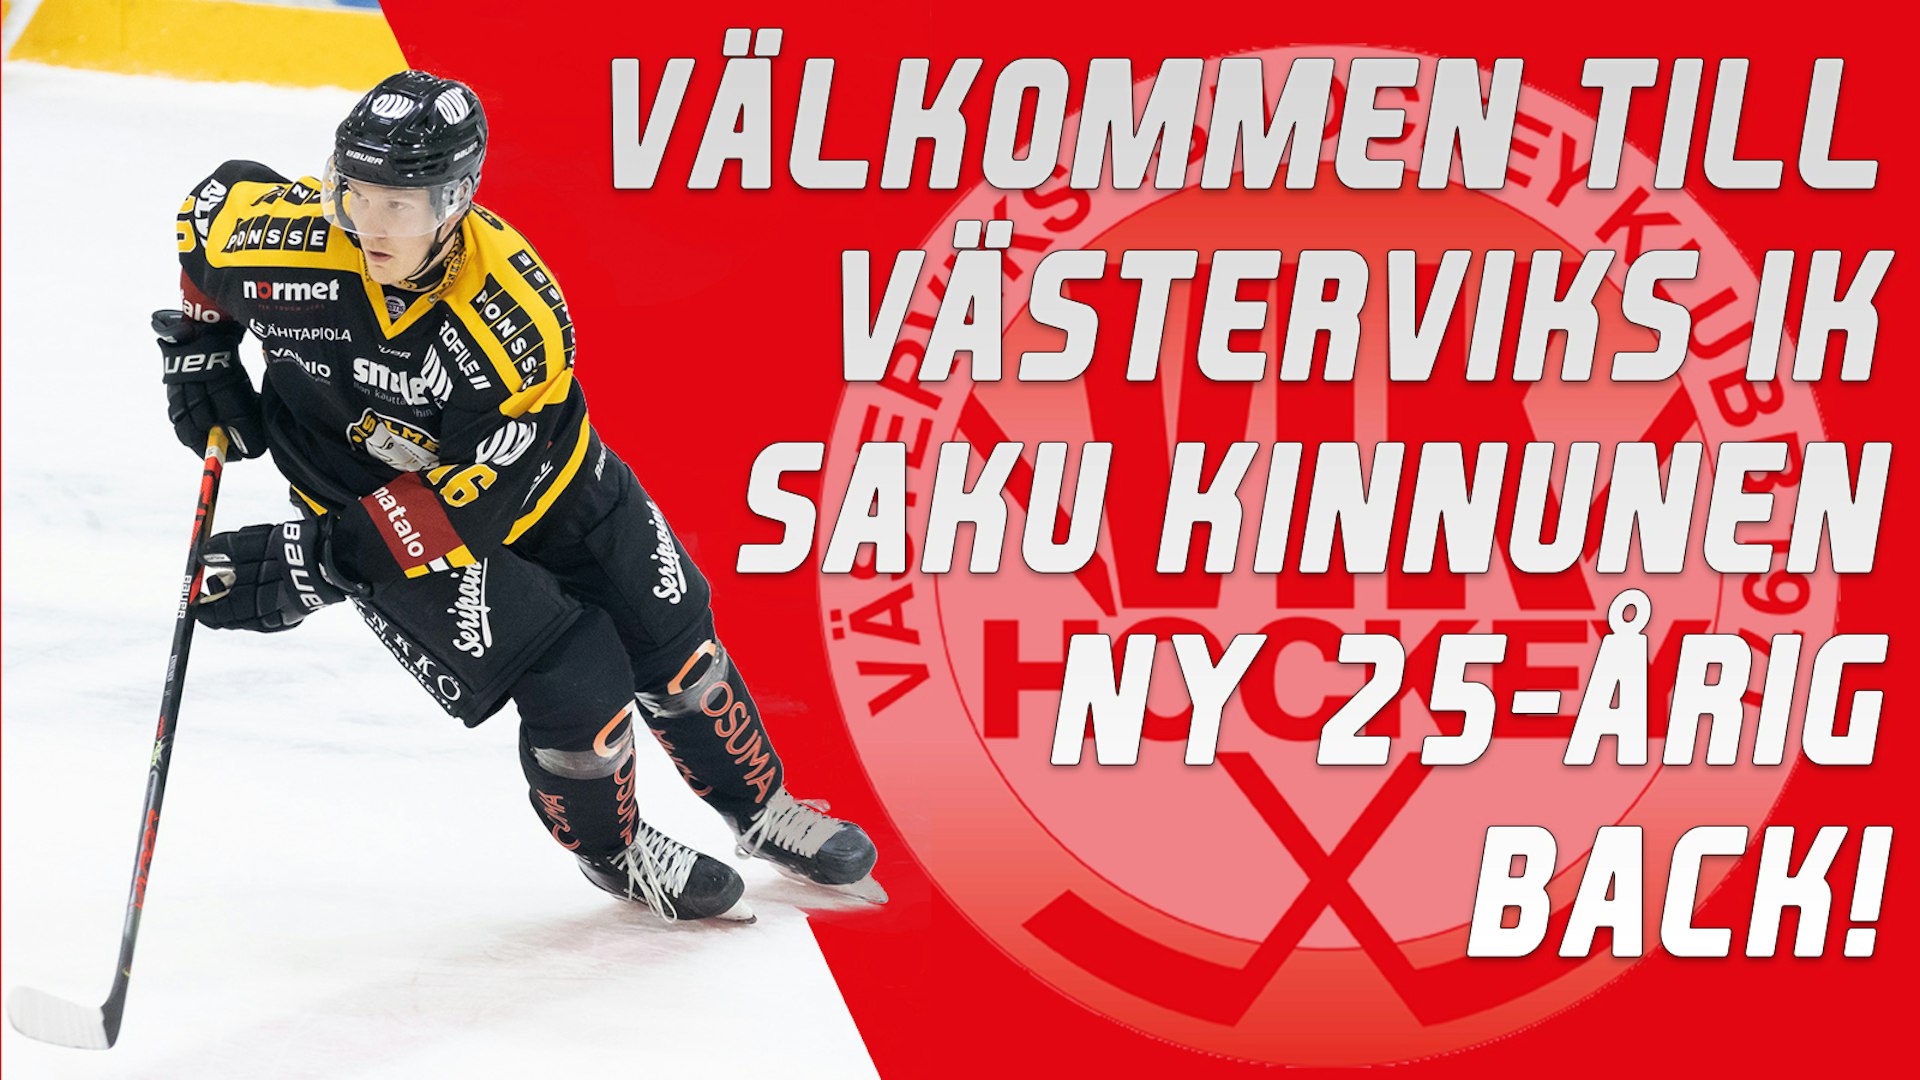 www.vikhockey.se